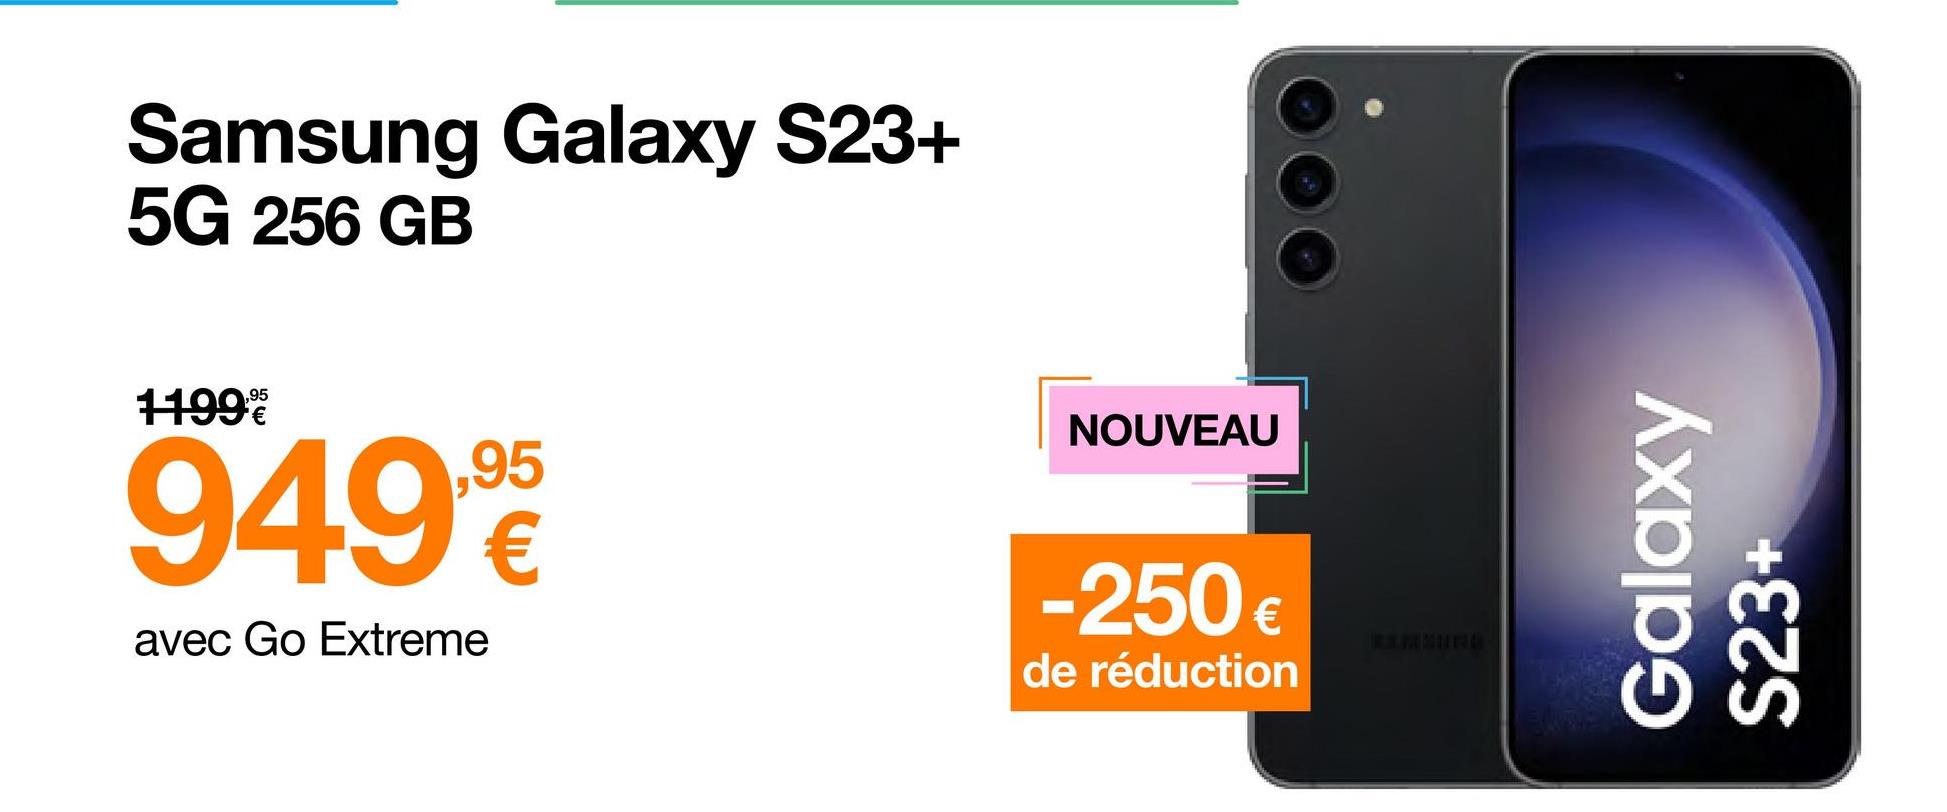 Samsung Galaxy S23+
5G 256 GB
11999
949,90
avec Go Extreme
NOUVEAU
-250 €
de réduction
Galaxy
S23+